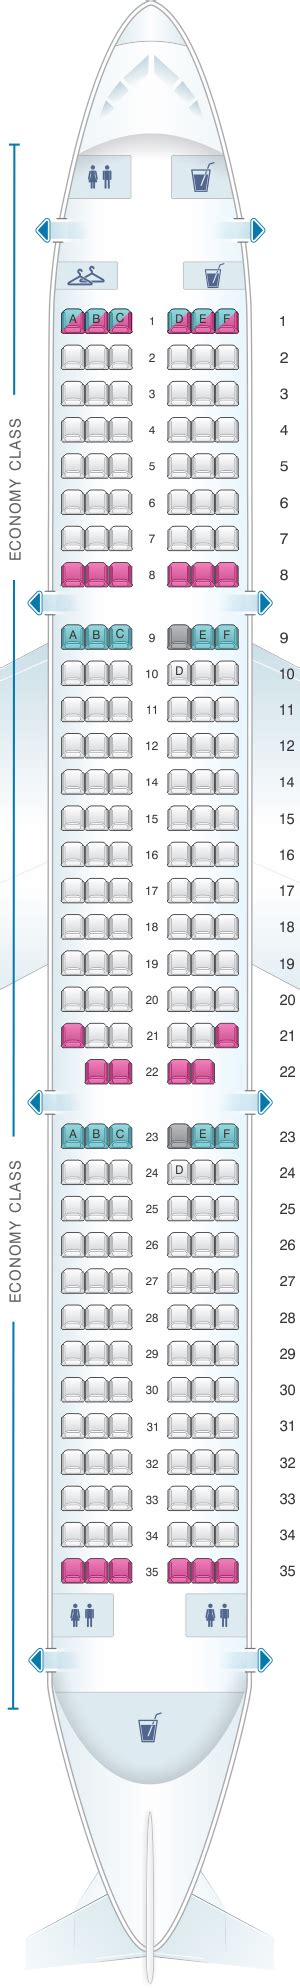 Seat Map Air France Airbus A321 Metropolitan V1 Seatmaestro